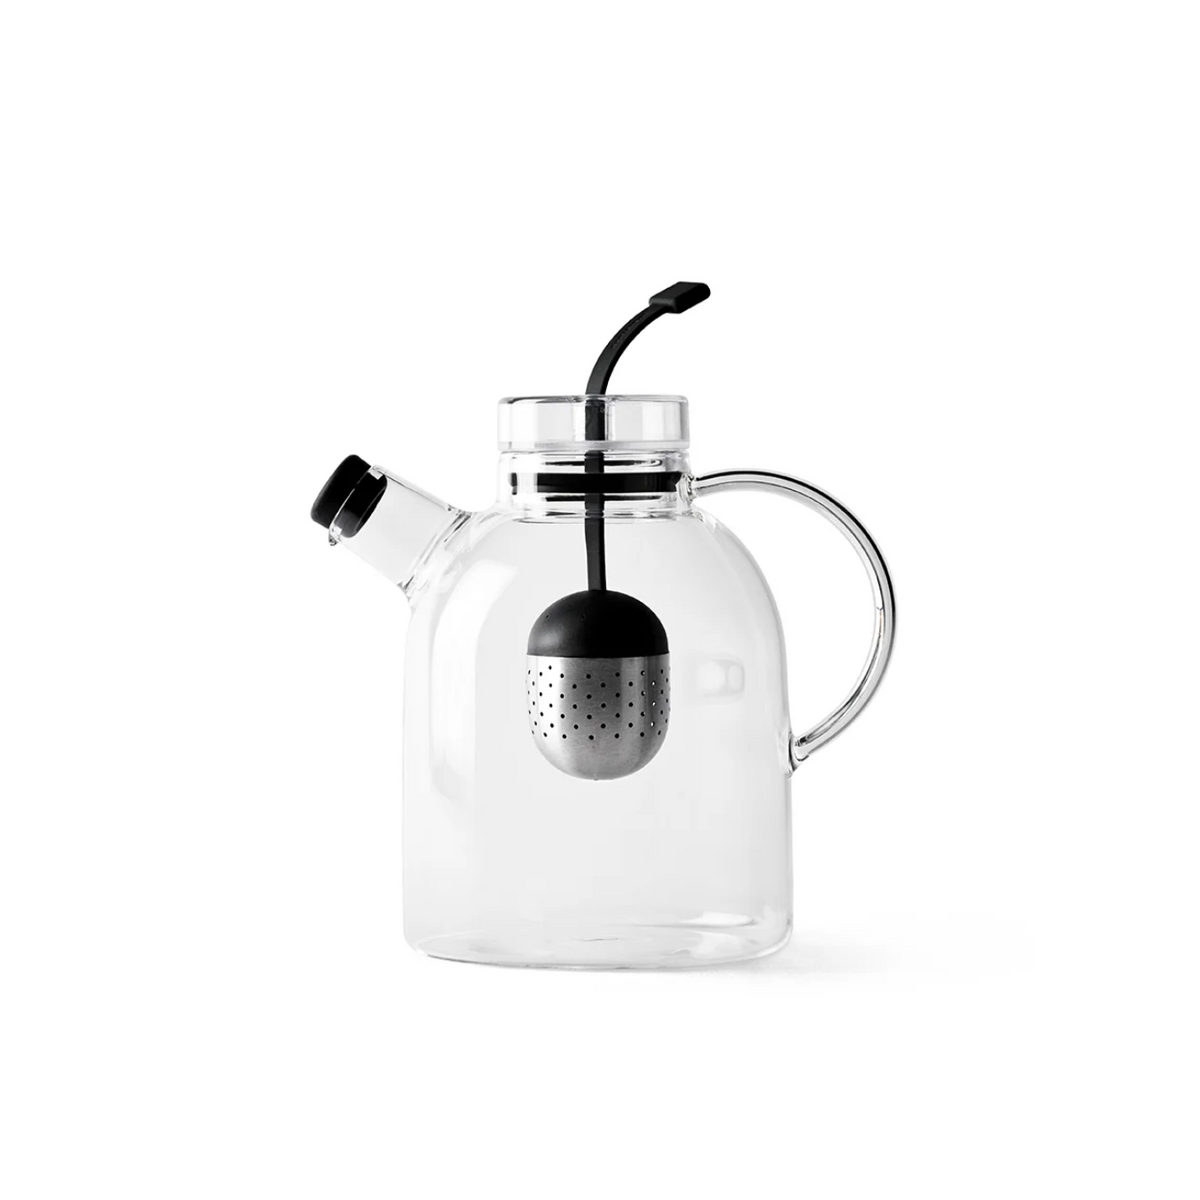 Kettle Teapot - Glass